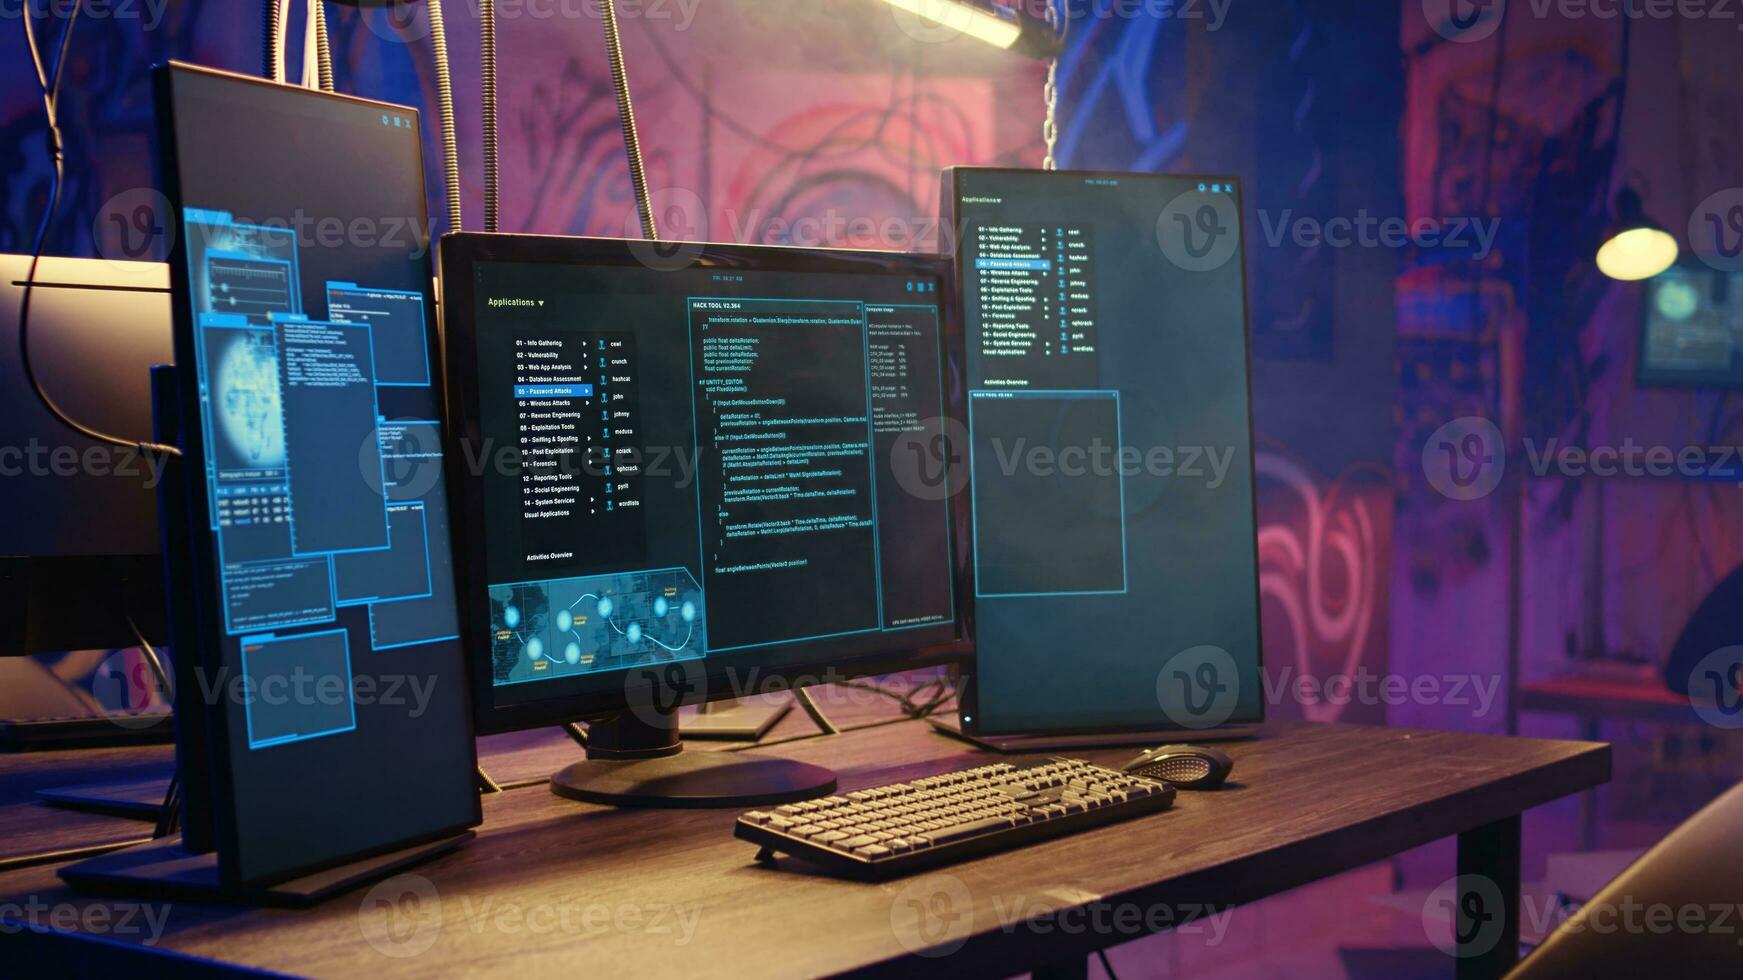 zoom i skott på programvara gränssnitt på dator skärm som visar programmering koda löpning i tömma lager med graffiti sprutas på väggar. binär språk på monitorer i underjordisk bas foto